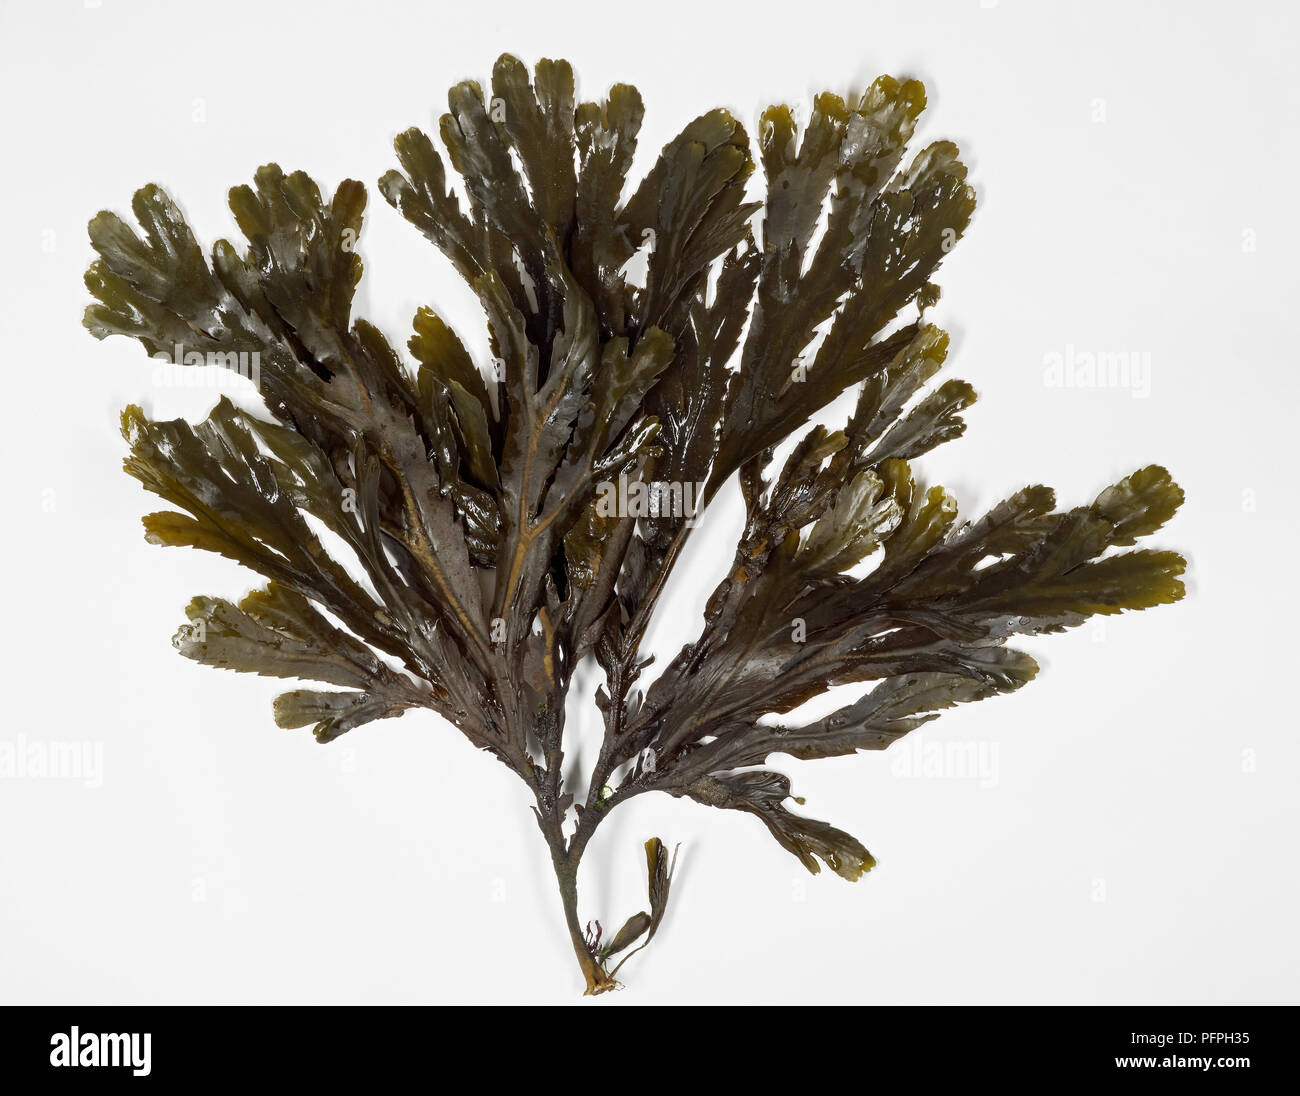 Wet seaweed leaves Stock Photo